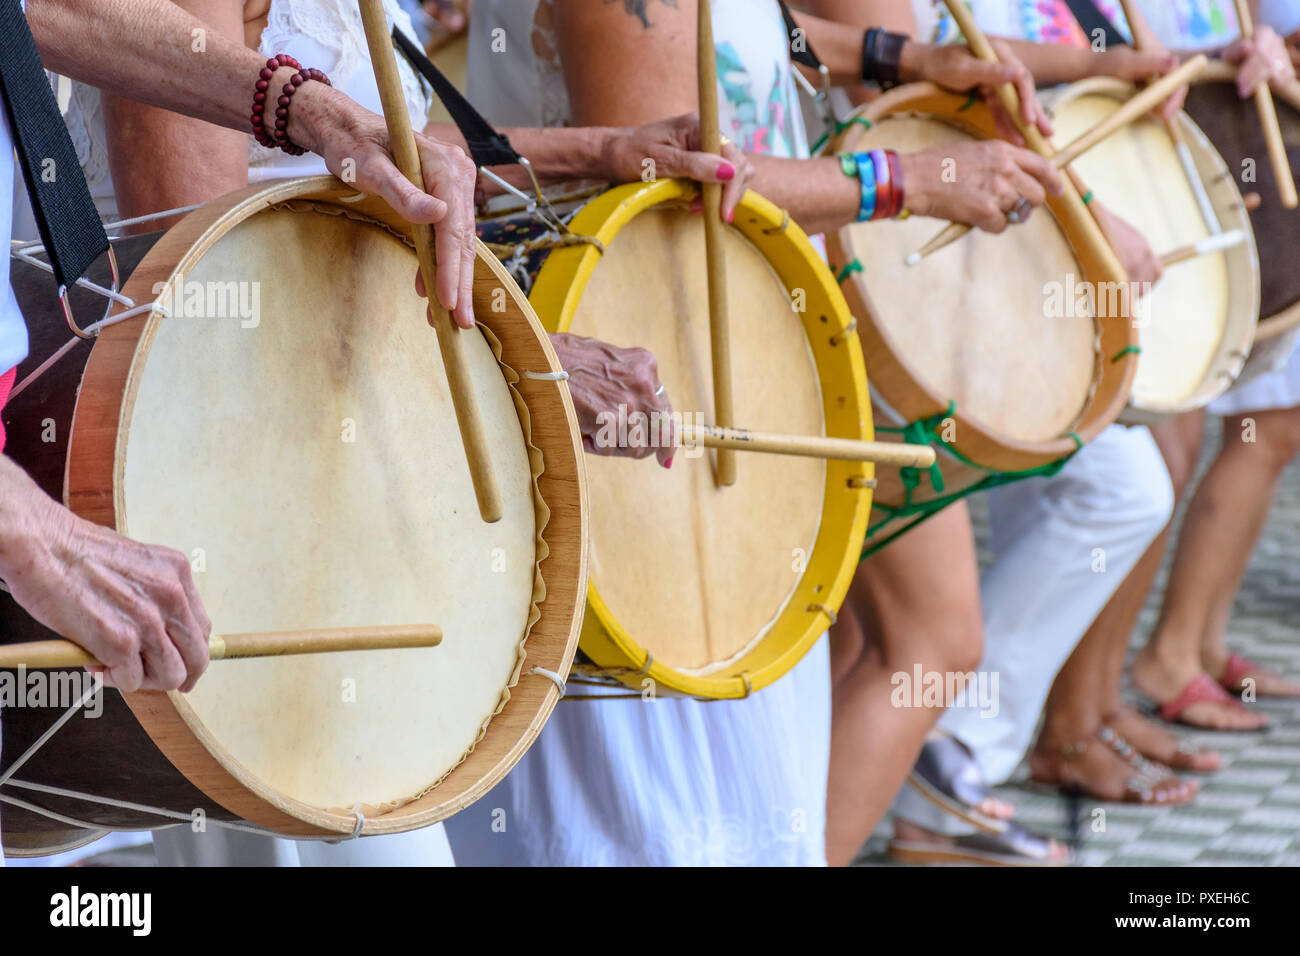 Les percussionnistes de womans à jouer de la batterie au cours de samba sur performance folklorique Belo Horizonte, Minas Gerais Banque D'Images